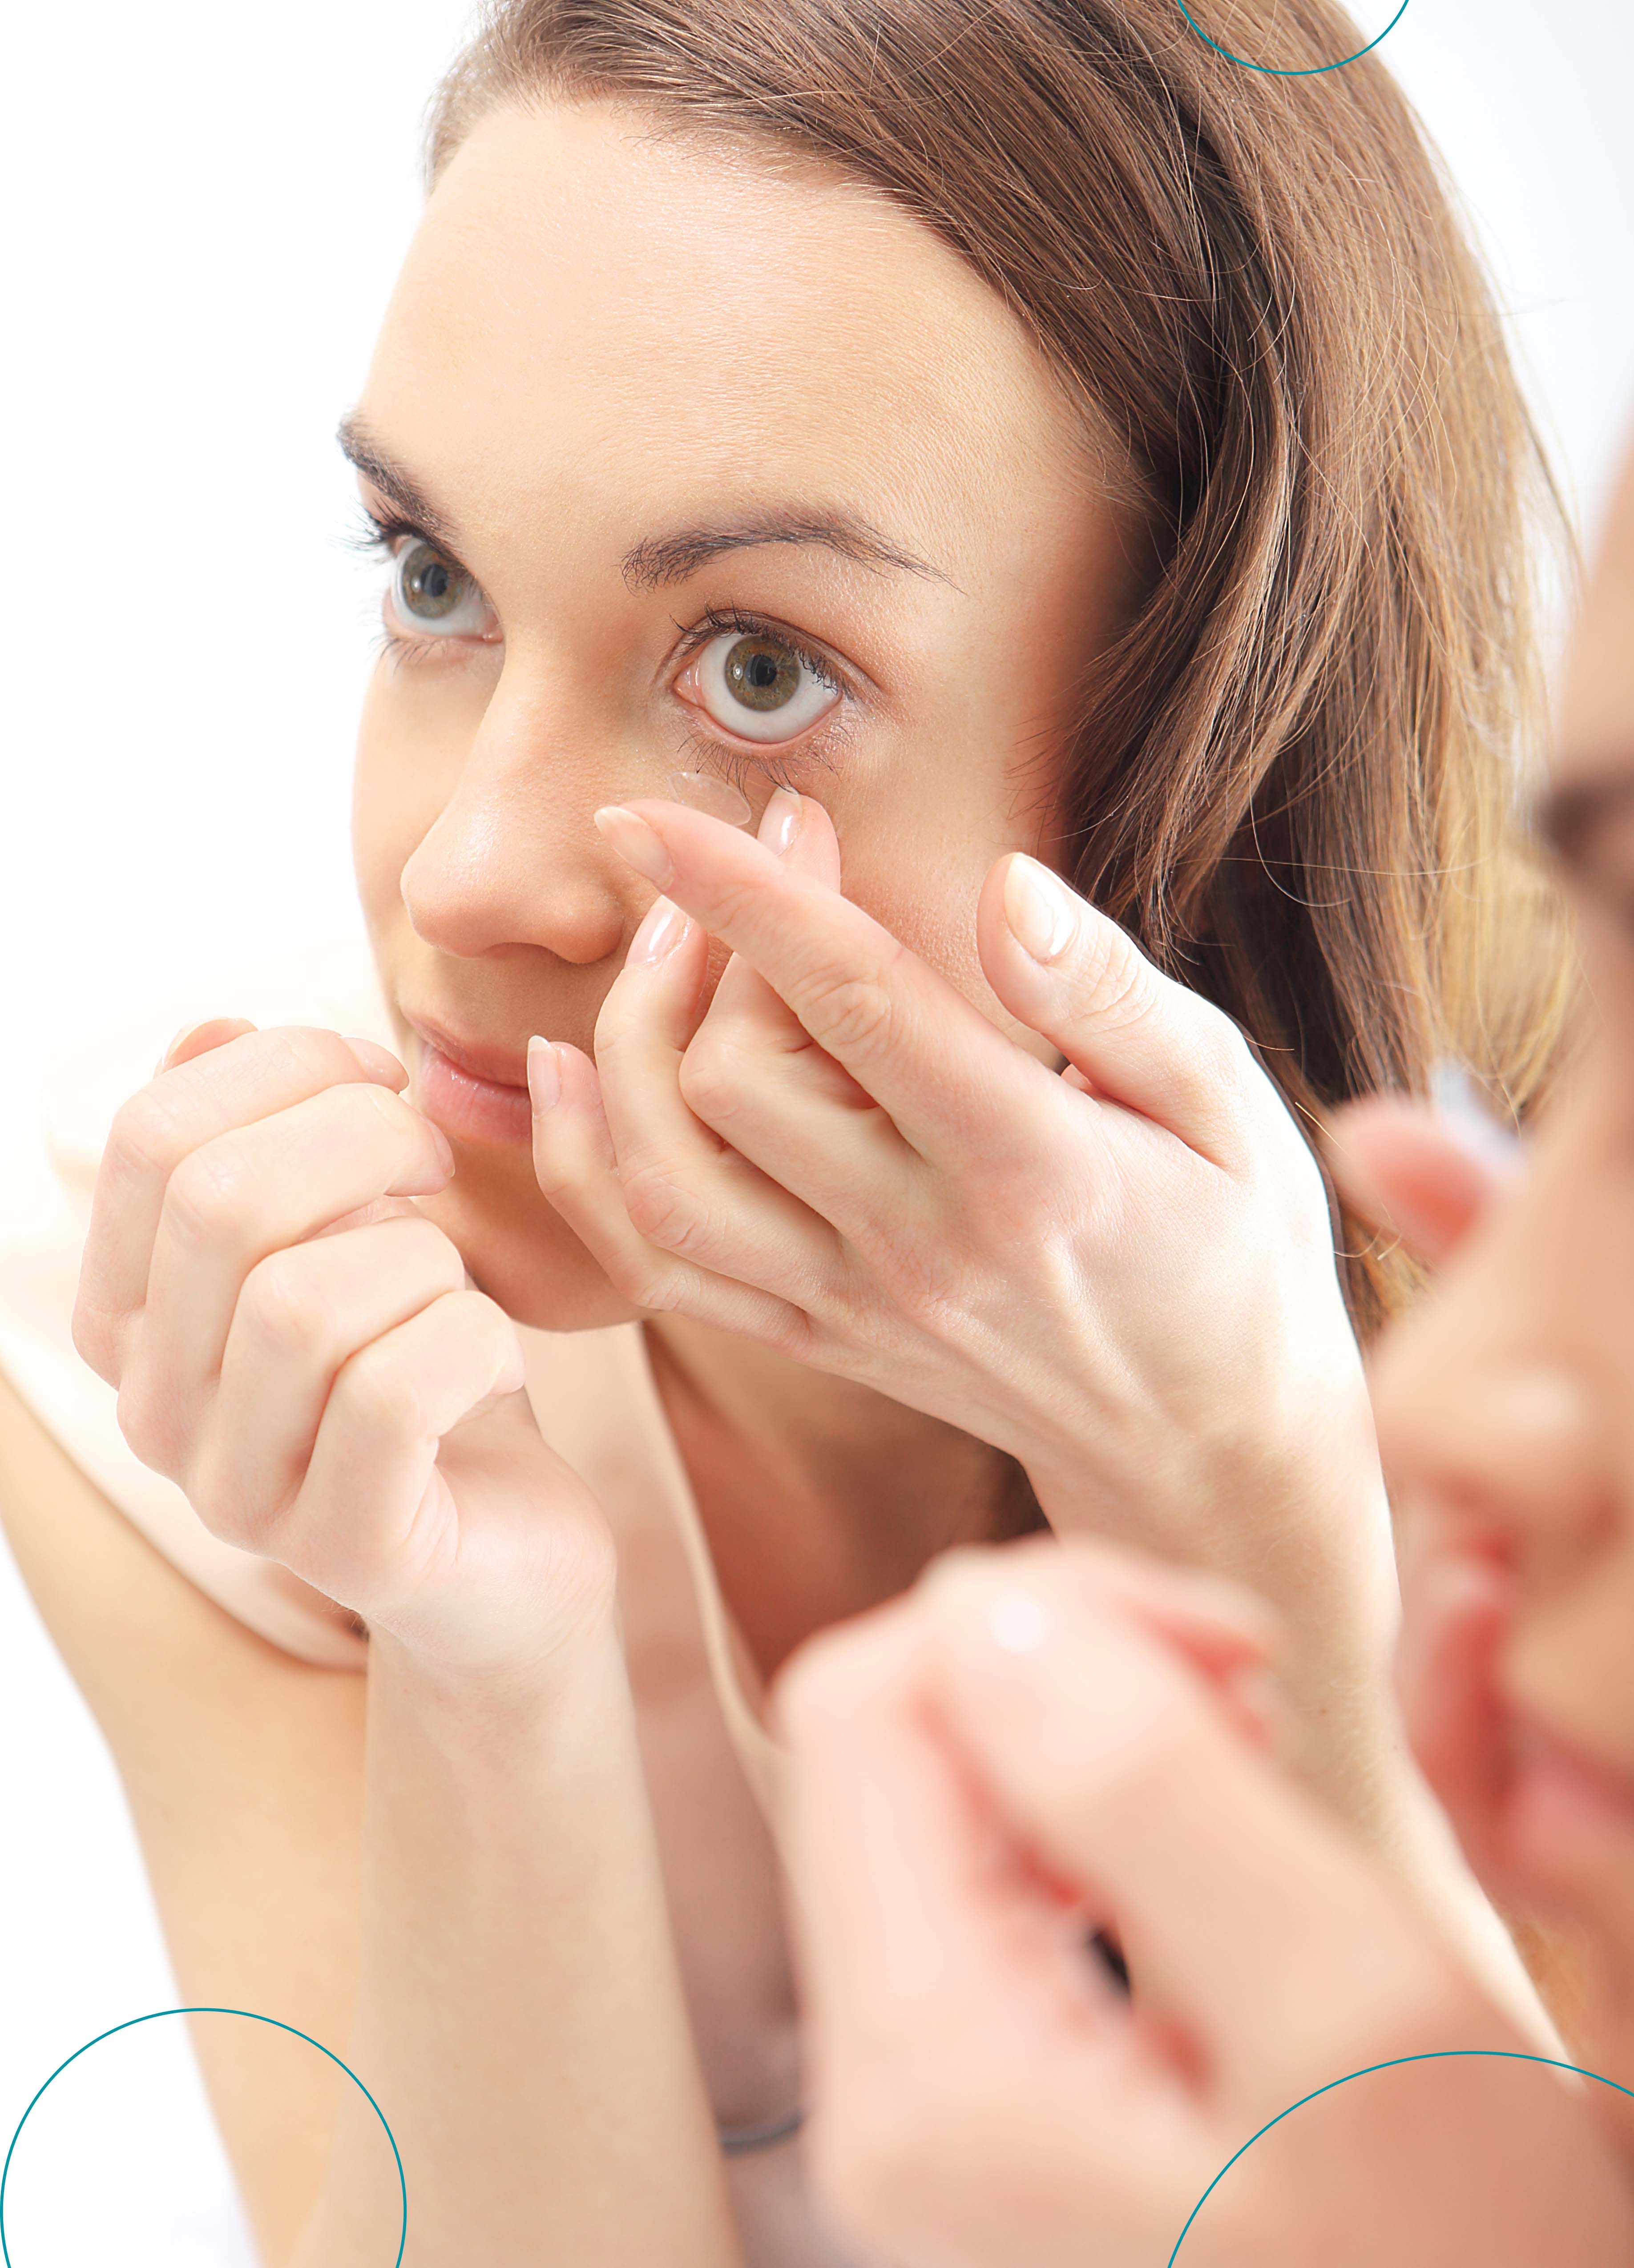 Frente al espejo, una mujer practica cómo ponerse los lentes de contacto de una manera fácil y rápida.